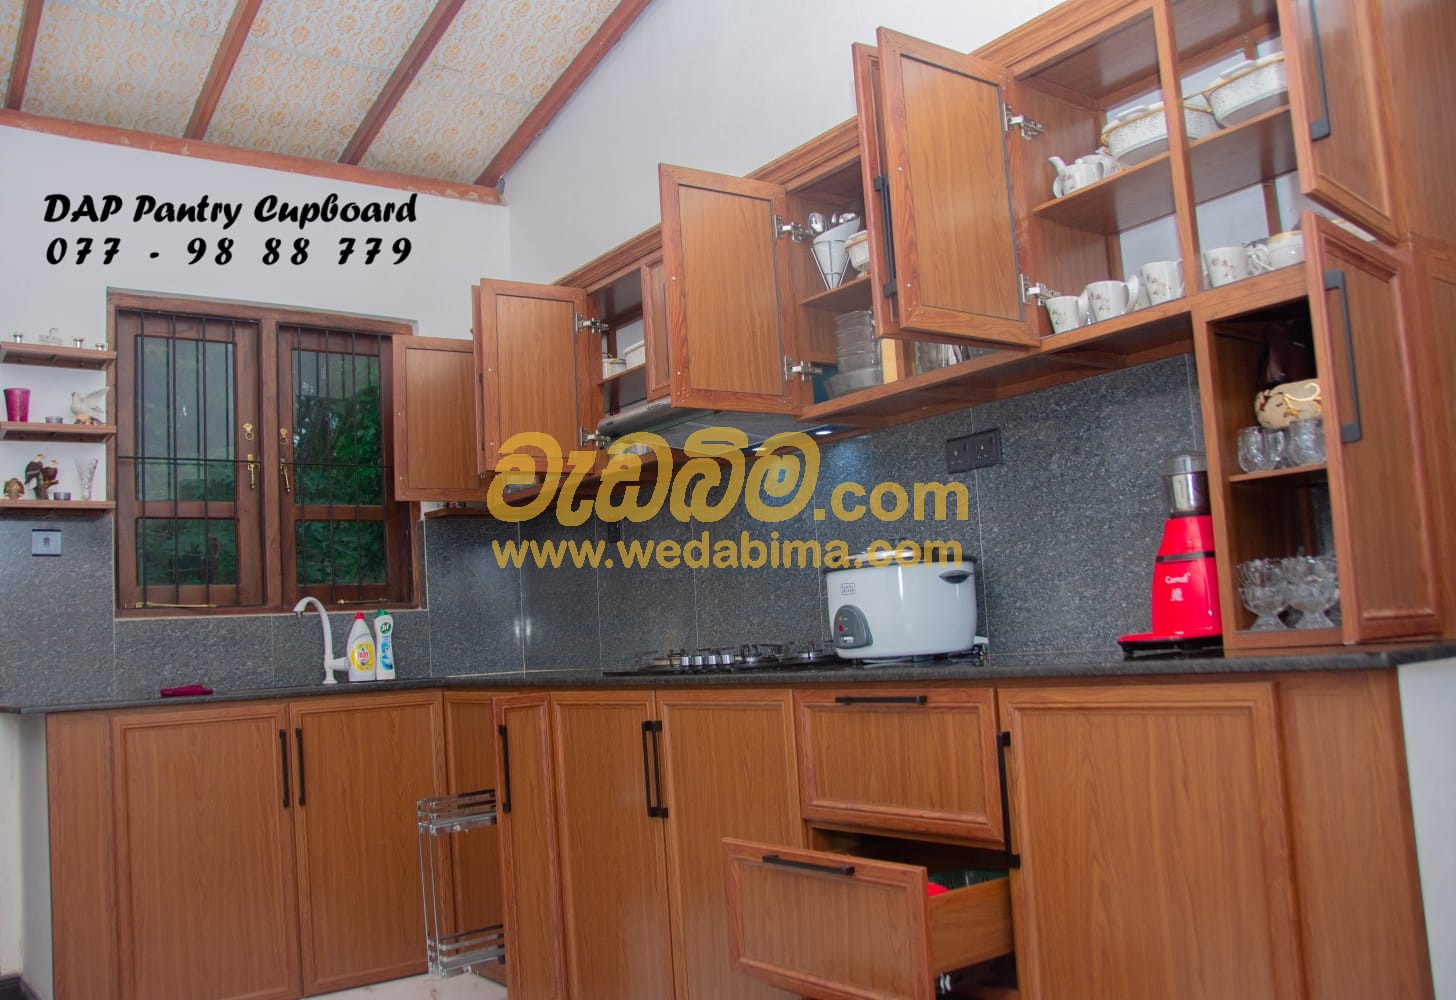 hdx boards pantry cupboard price in sri lanka